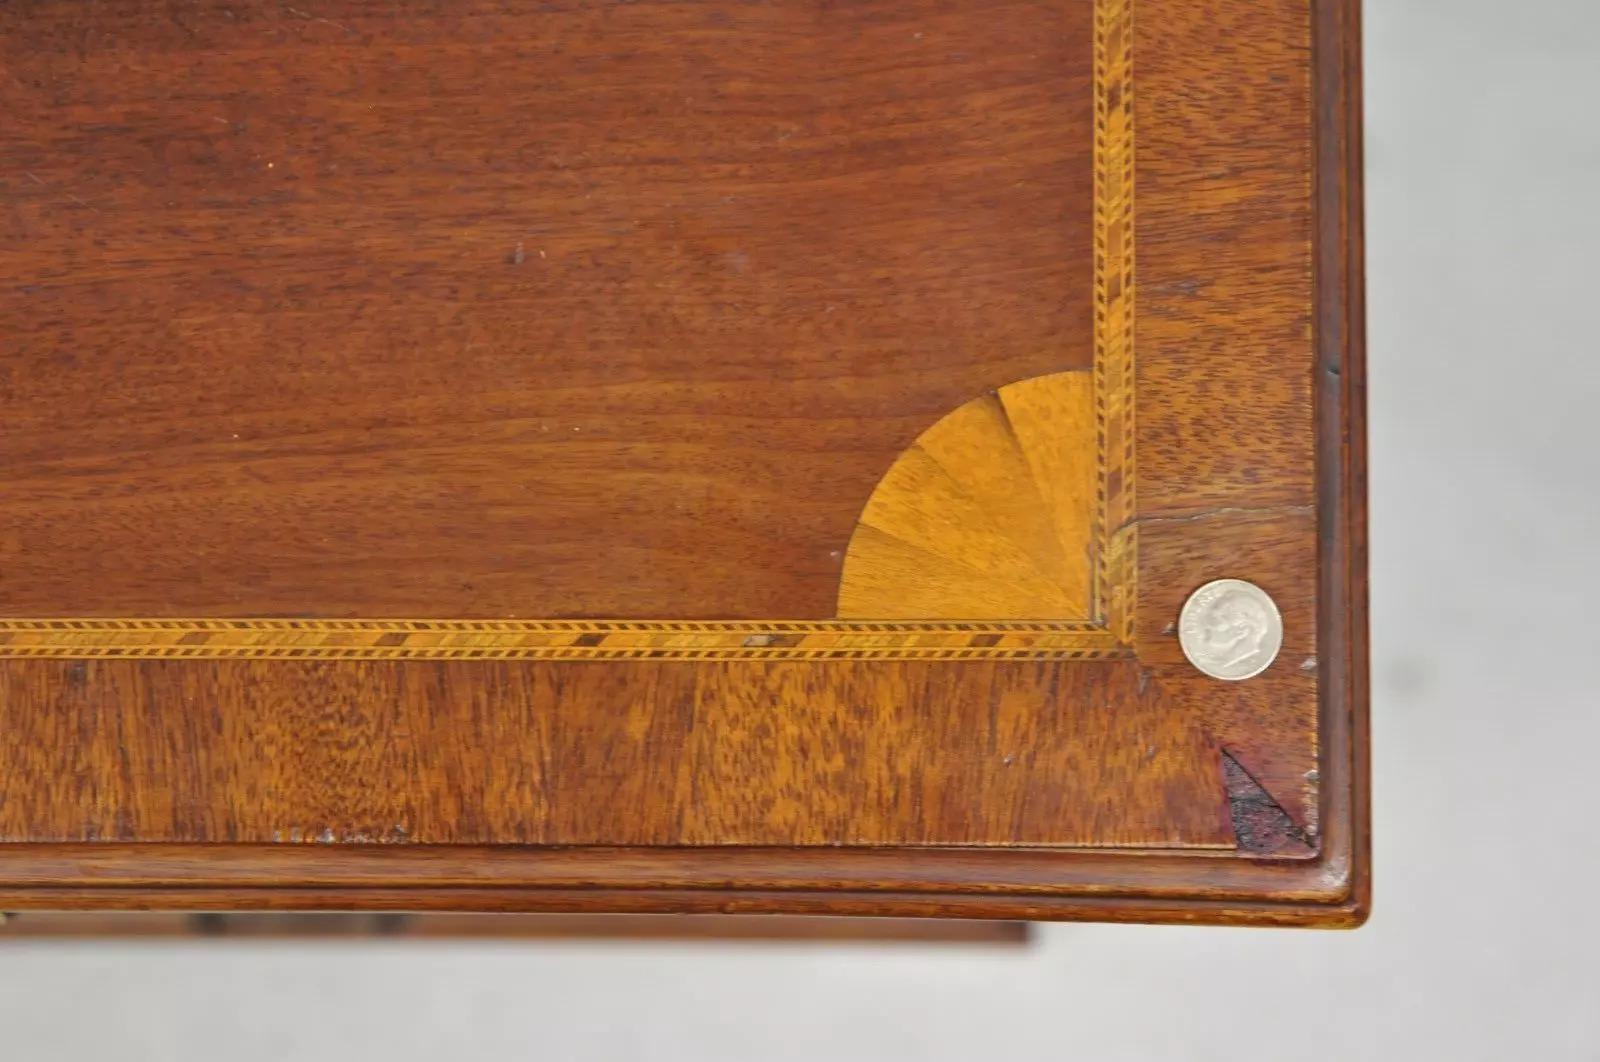 Antique English Edwardian Mahogany Chest of Drawers Secretary Desk Bureau For Sale 2